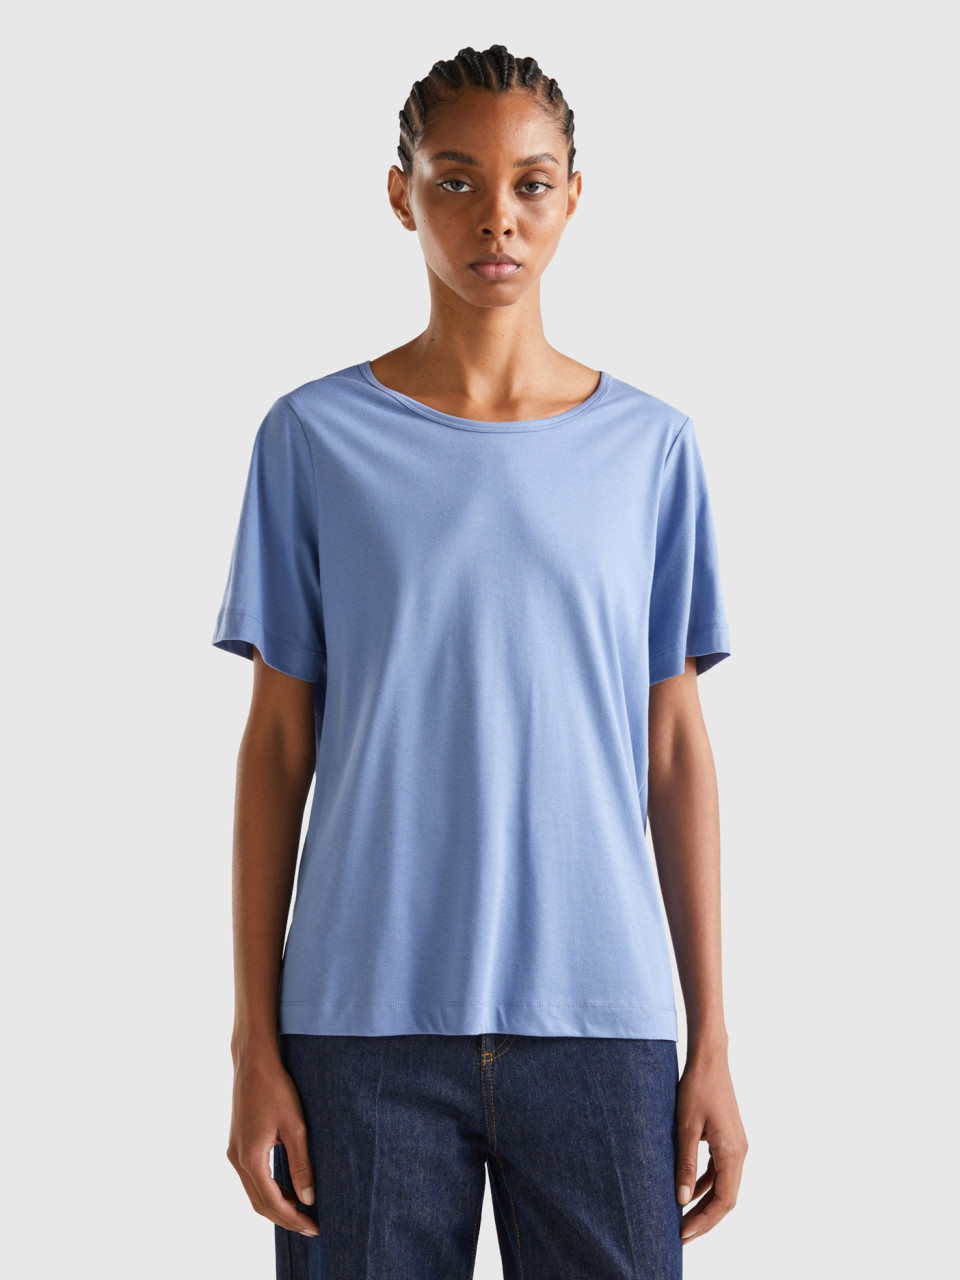 Benetton, Sky Blue Short Sleeve T-shirt, Light Blue, Women